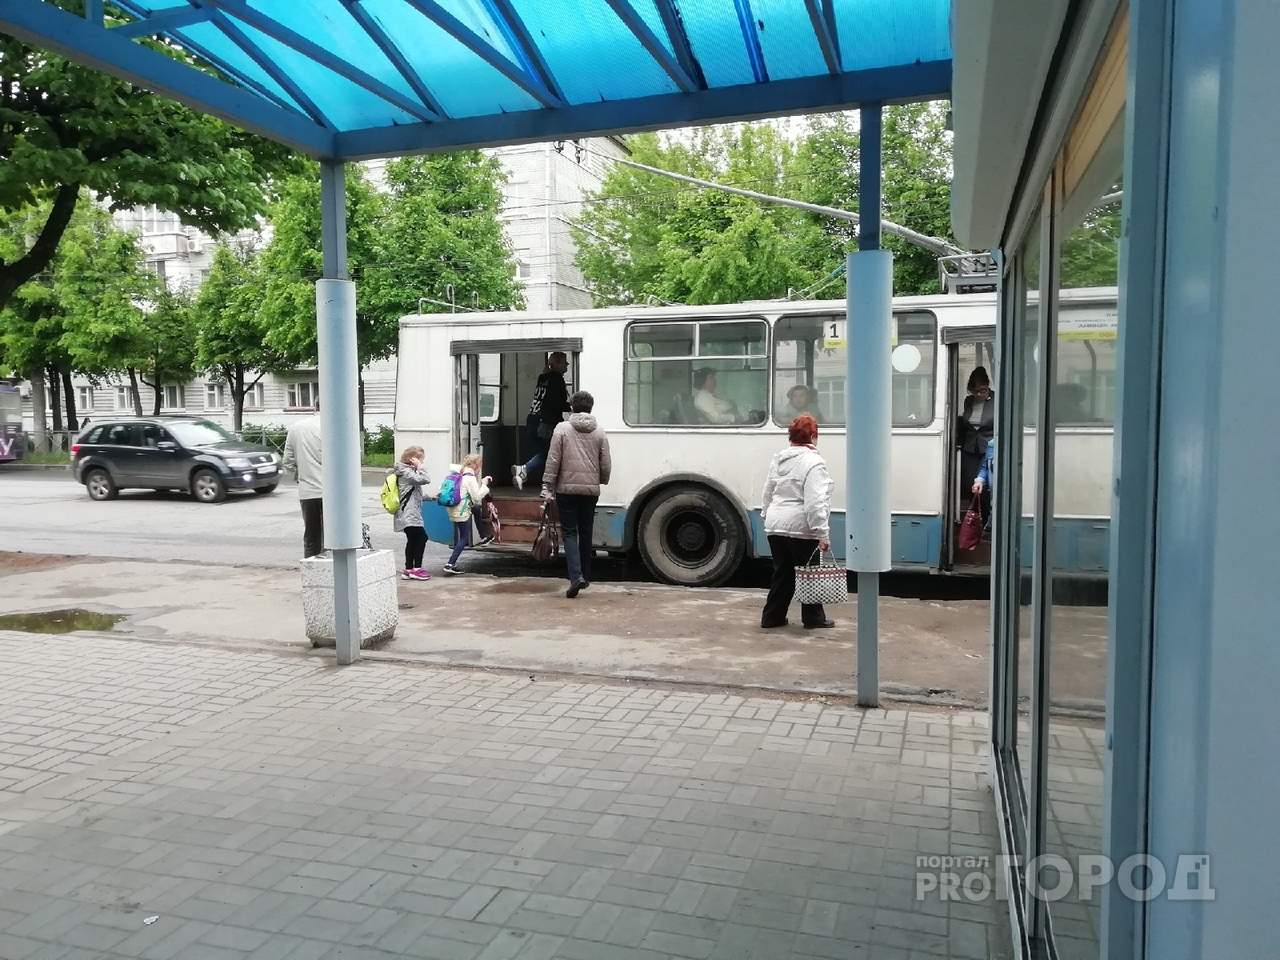 Йошкар-Ола попала в ТОП-40 по качеству работы общественного транспорта